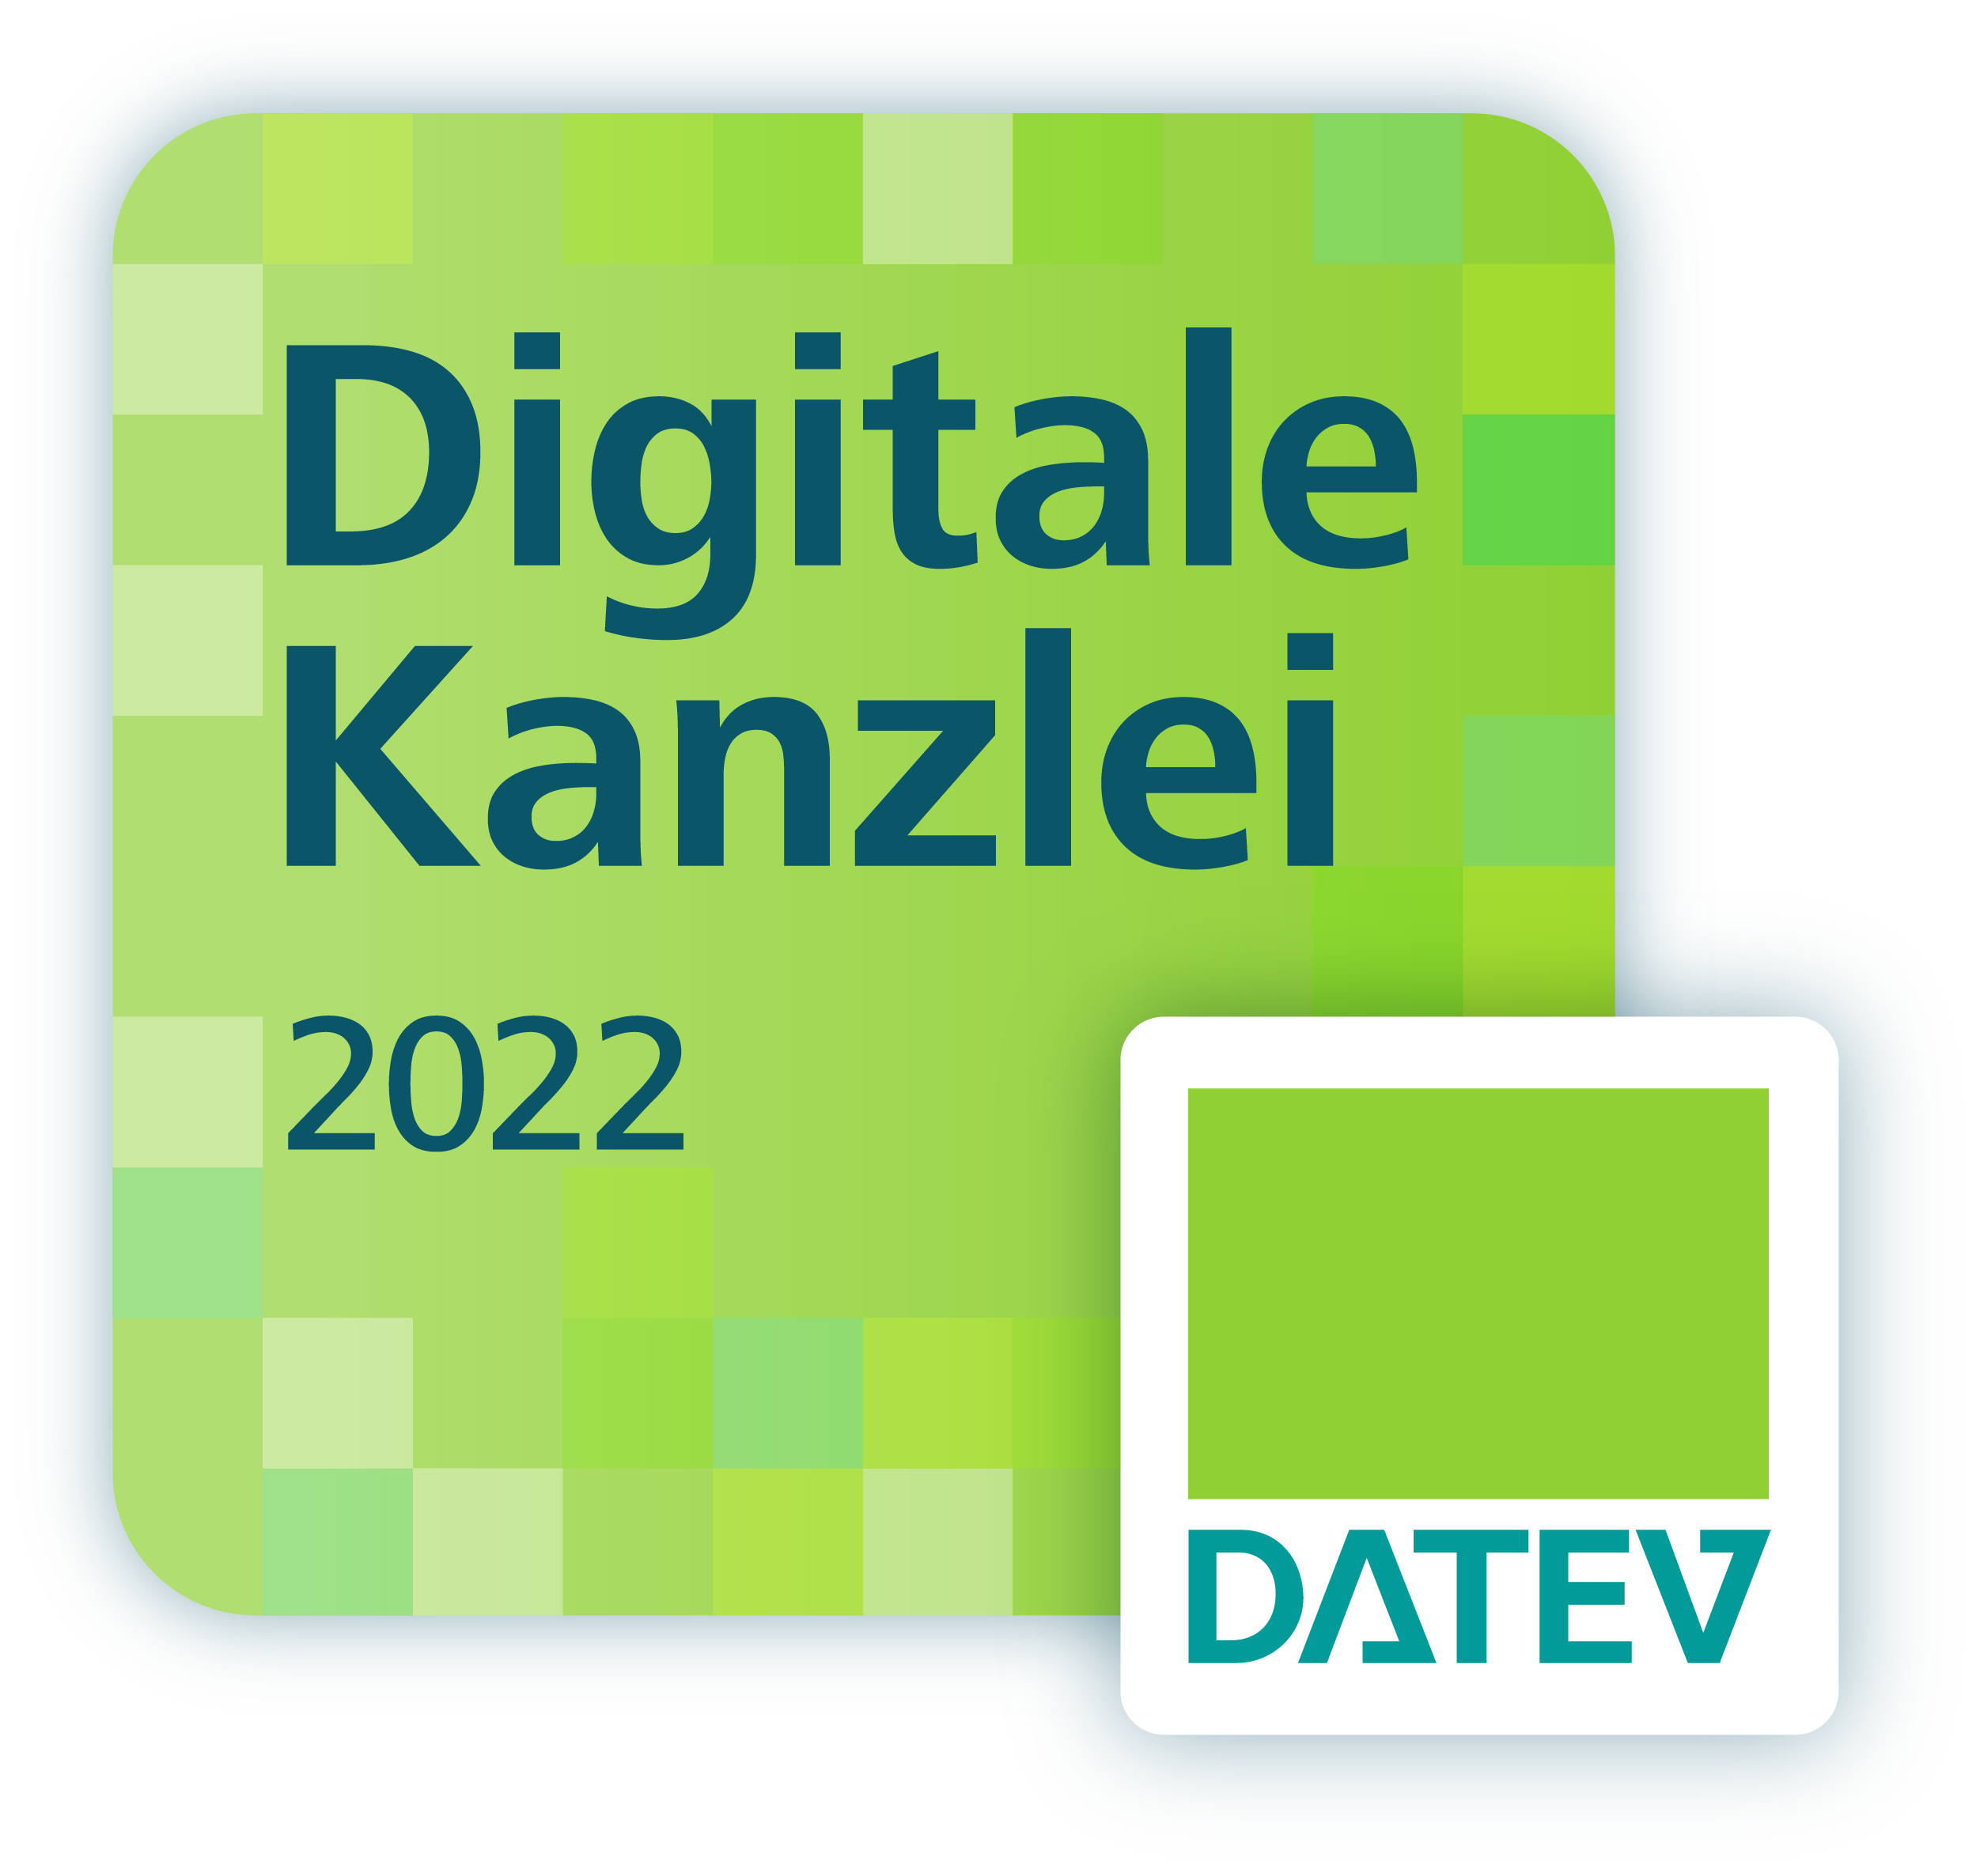 Digitale Kanzlei 2022 DATEV